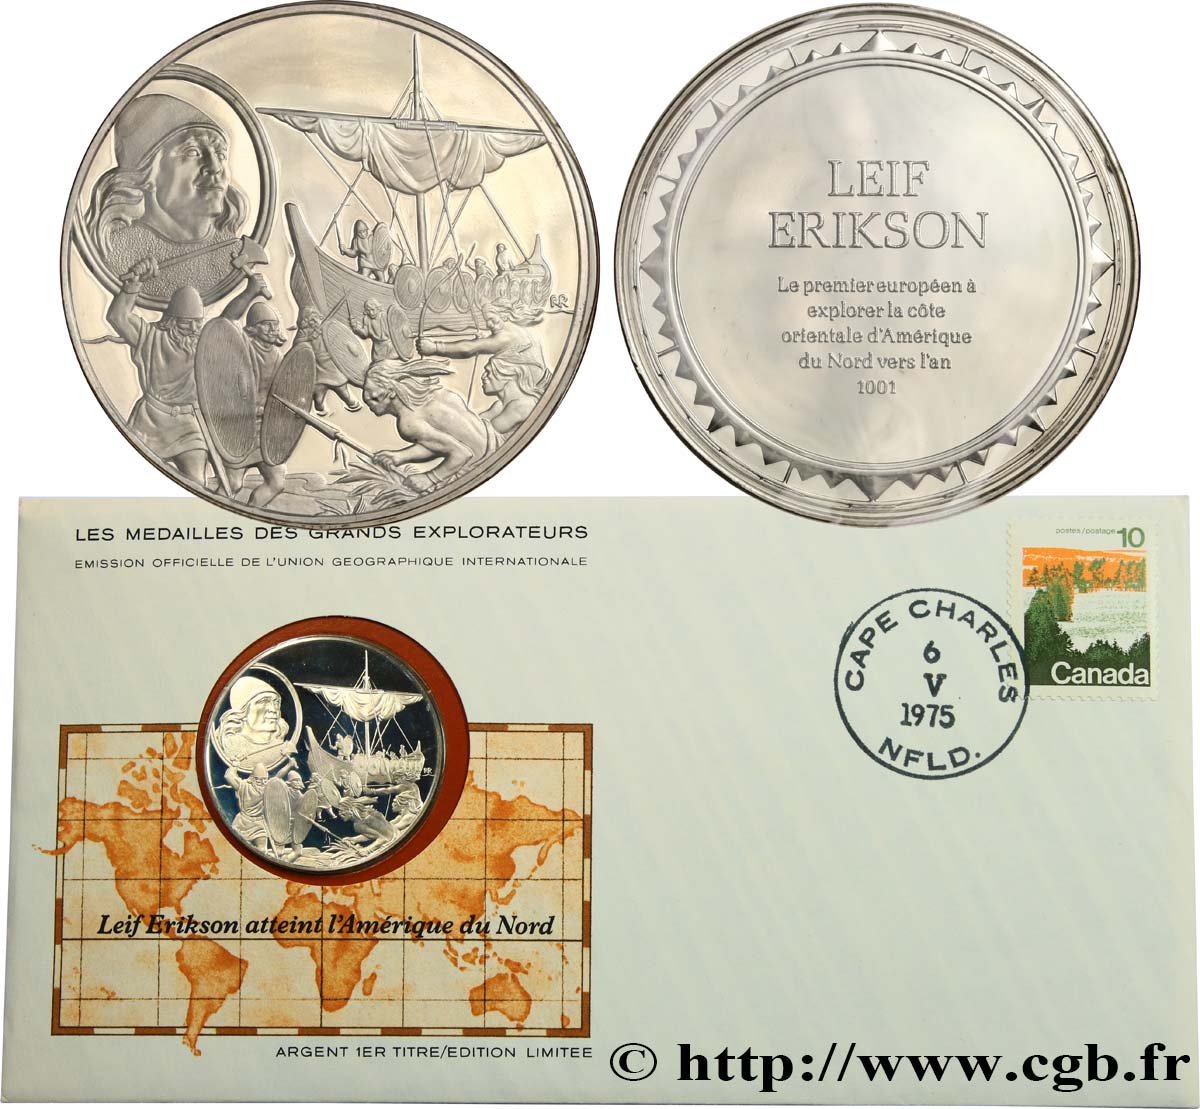 THE GREAT EXPLORERS  MEDALS Enveloppe “Timbre médaille”, Leif Erikson atteint l’Amérique du Nord SC